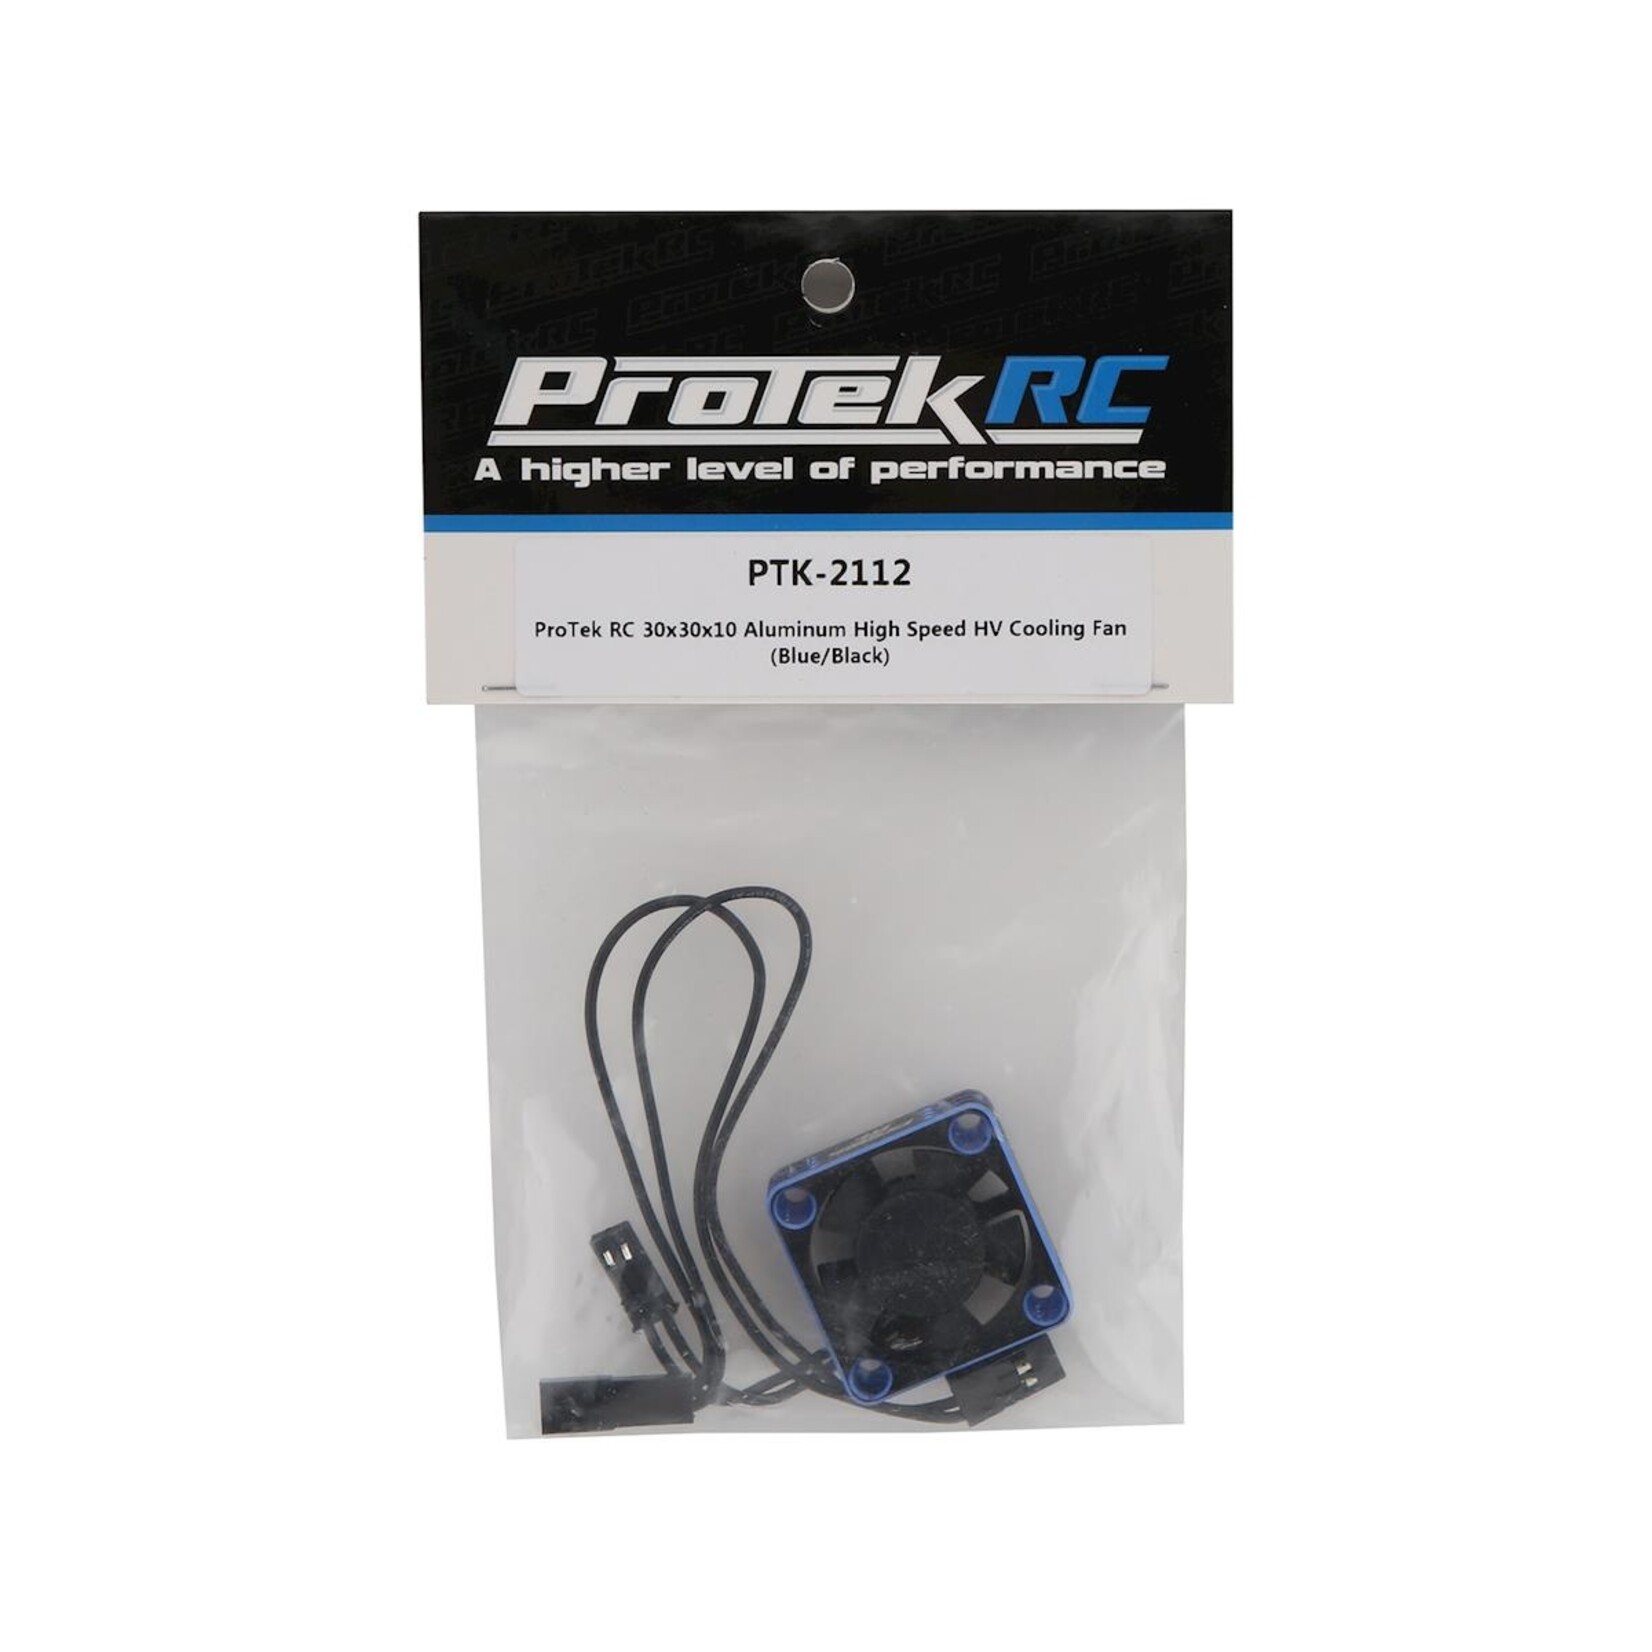 ProTek RC ProTek RC 30x30x10mm Aluminum High Speed HV Cooling Fan (Blue/Black) #PTK-2112